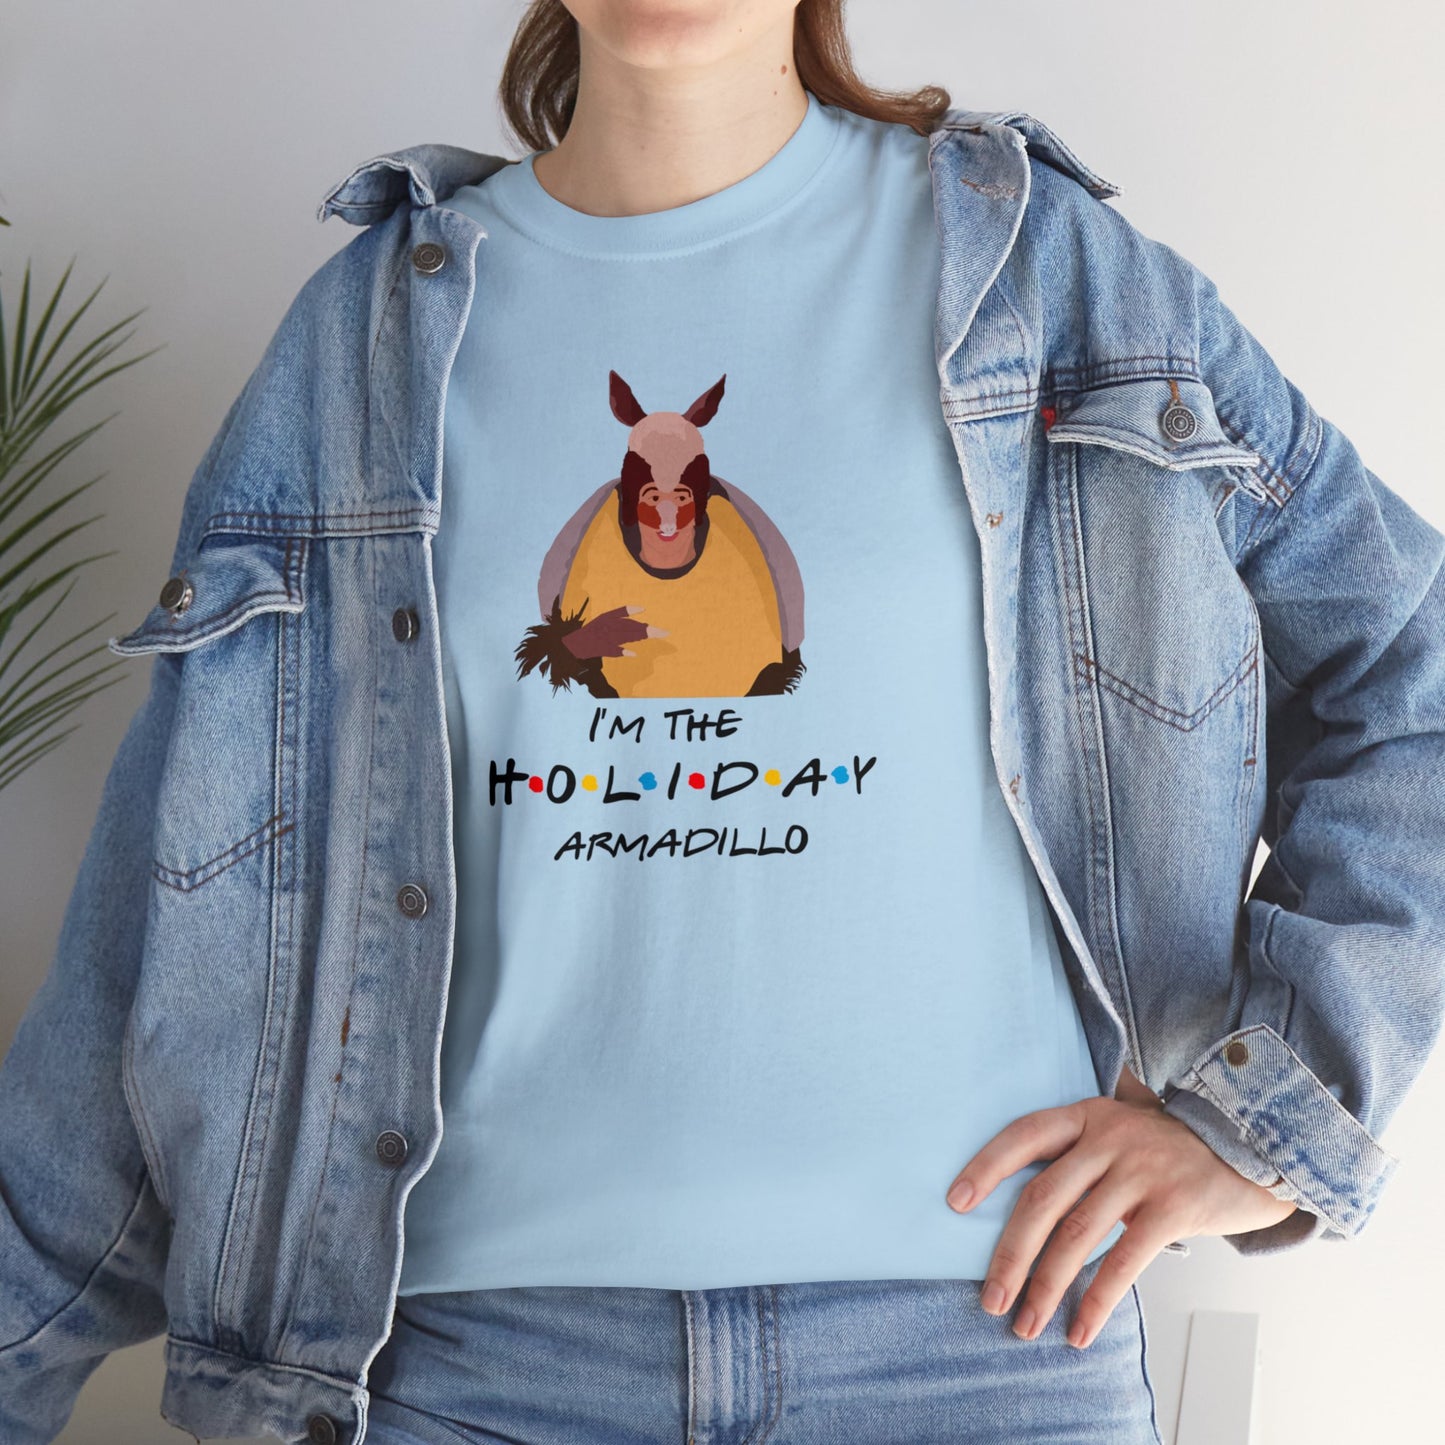 I’m The Holiday Armadillo  - Unisex T-Shirt